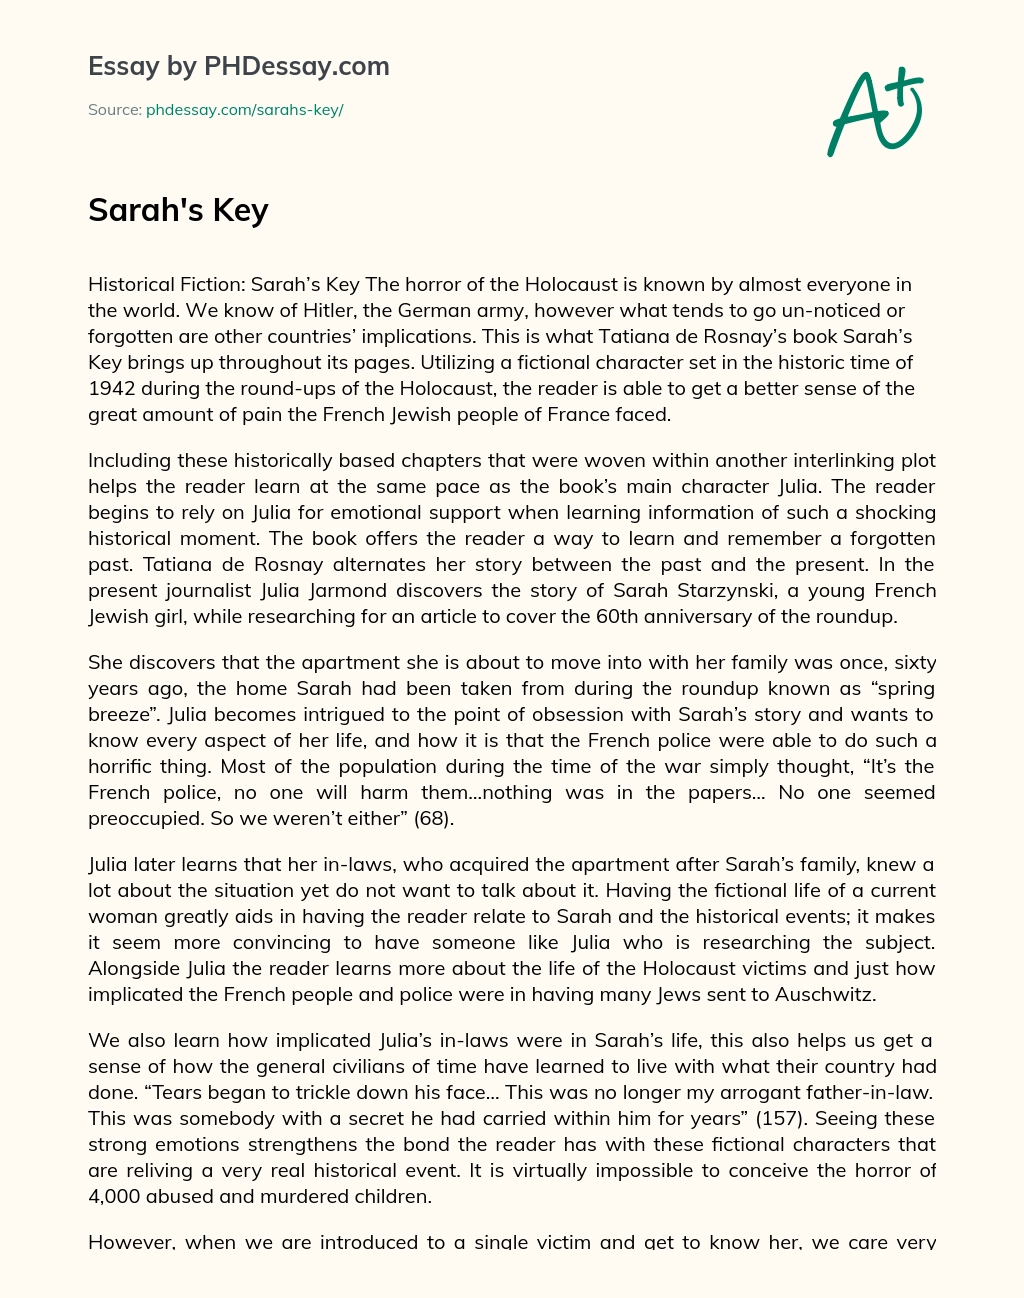 sarahs key book review essay